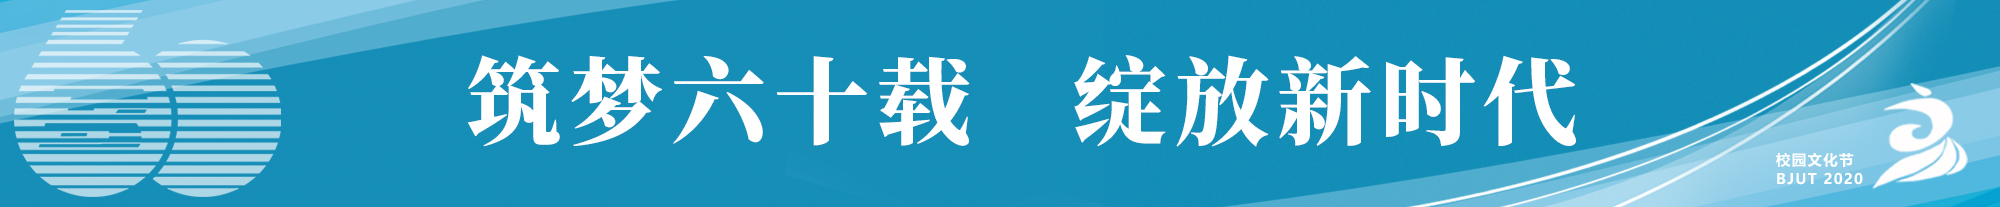 附件4：第十届校园文化节logo.jpg